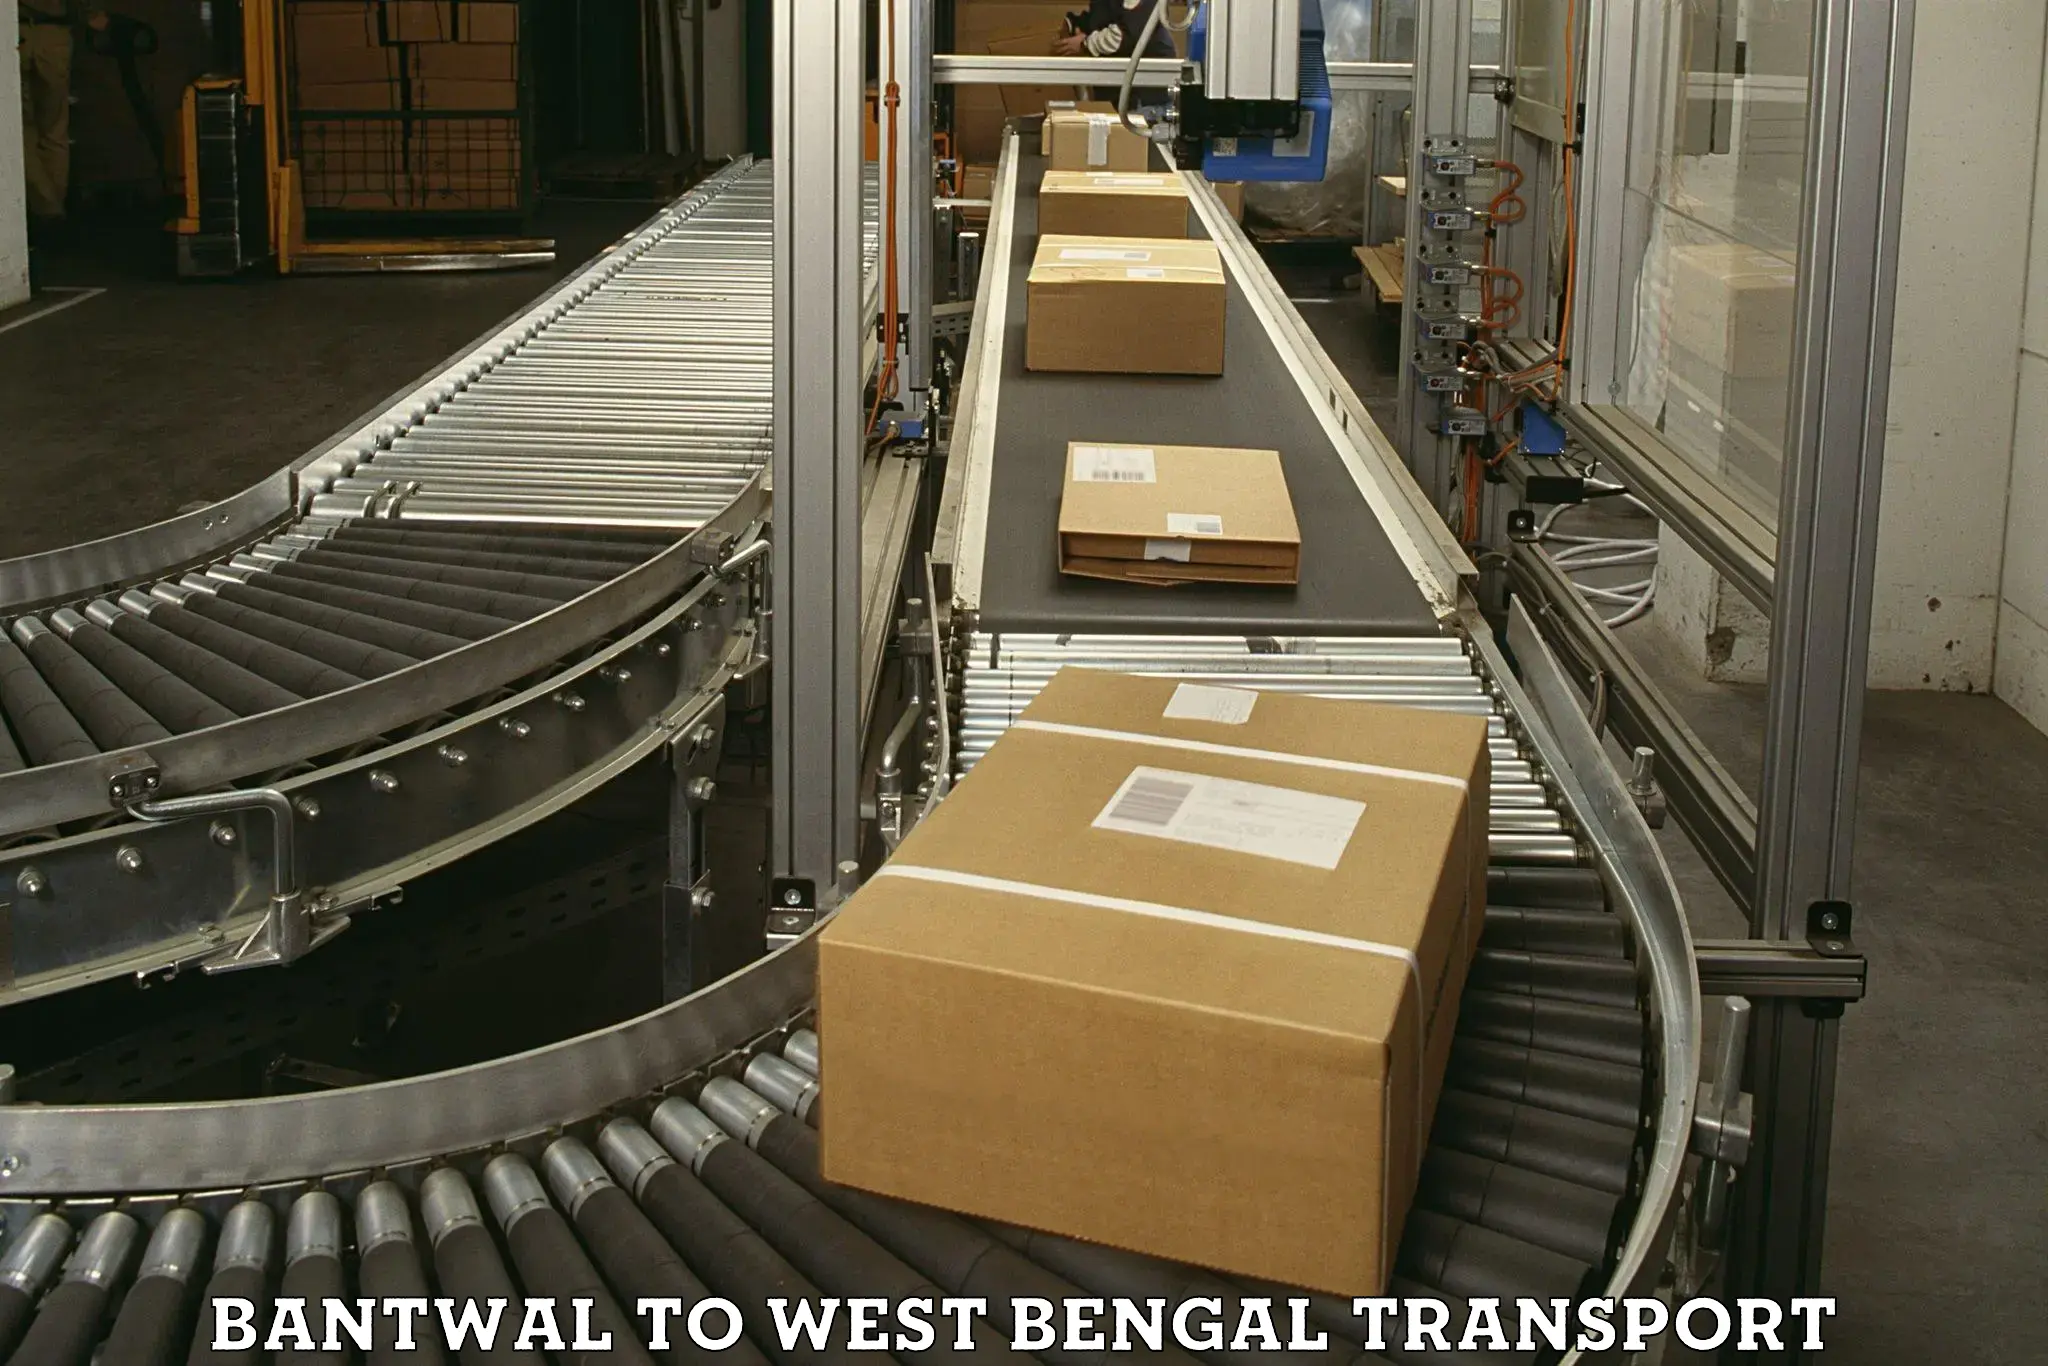 Furniture transport service Bantwal to Bandel